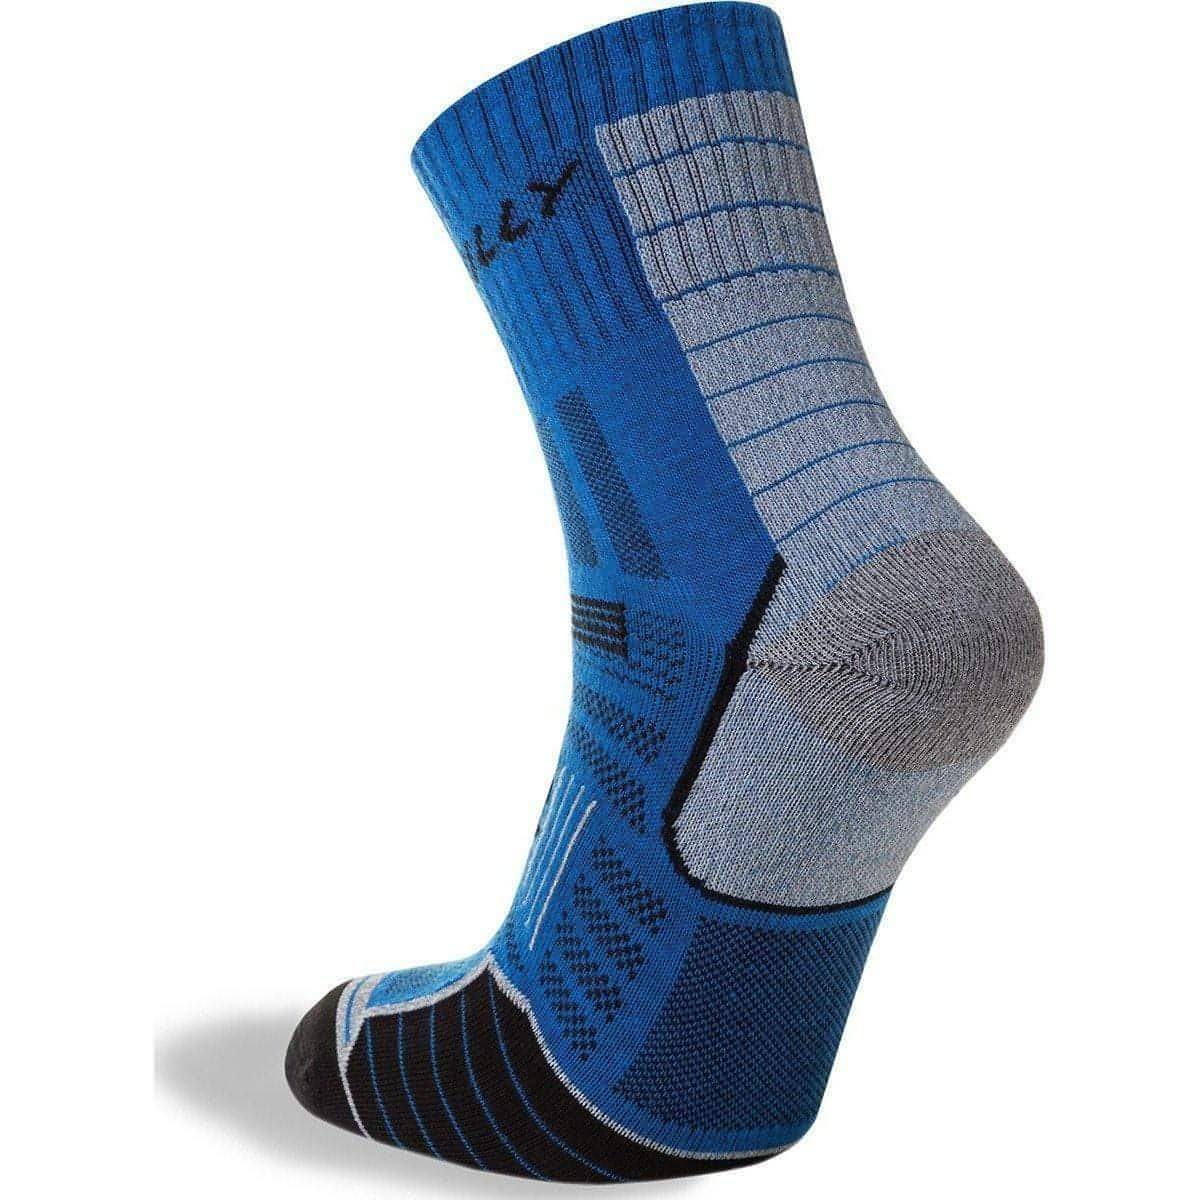 Hilly Twin Skin Anklet Running Socks - Blue - Start Fitness